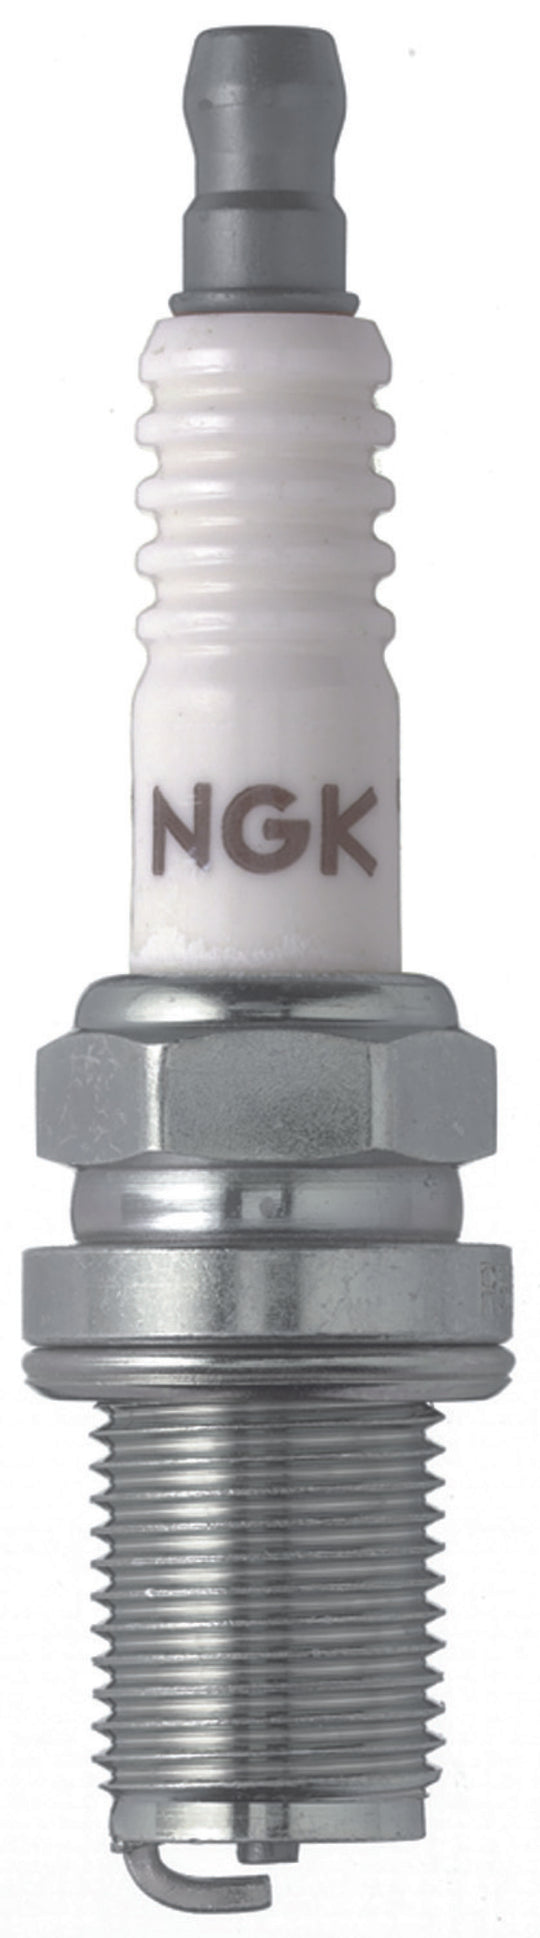 NGK Racing Spark Plug Box of 4 (R5671A-9)